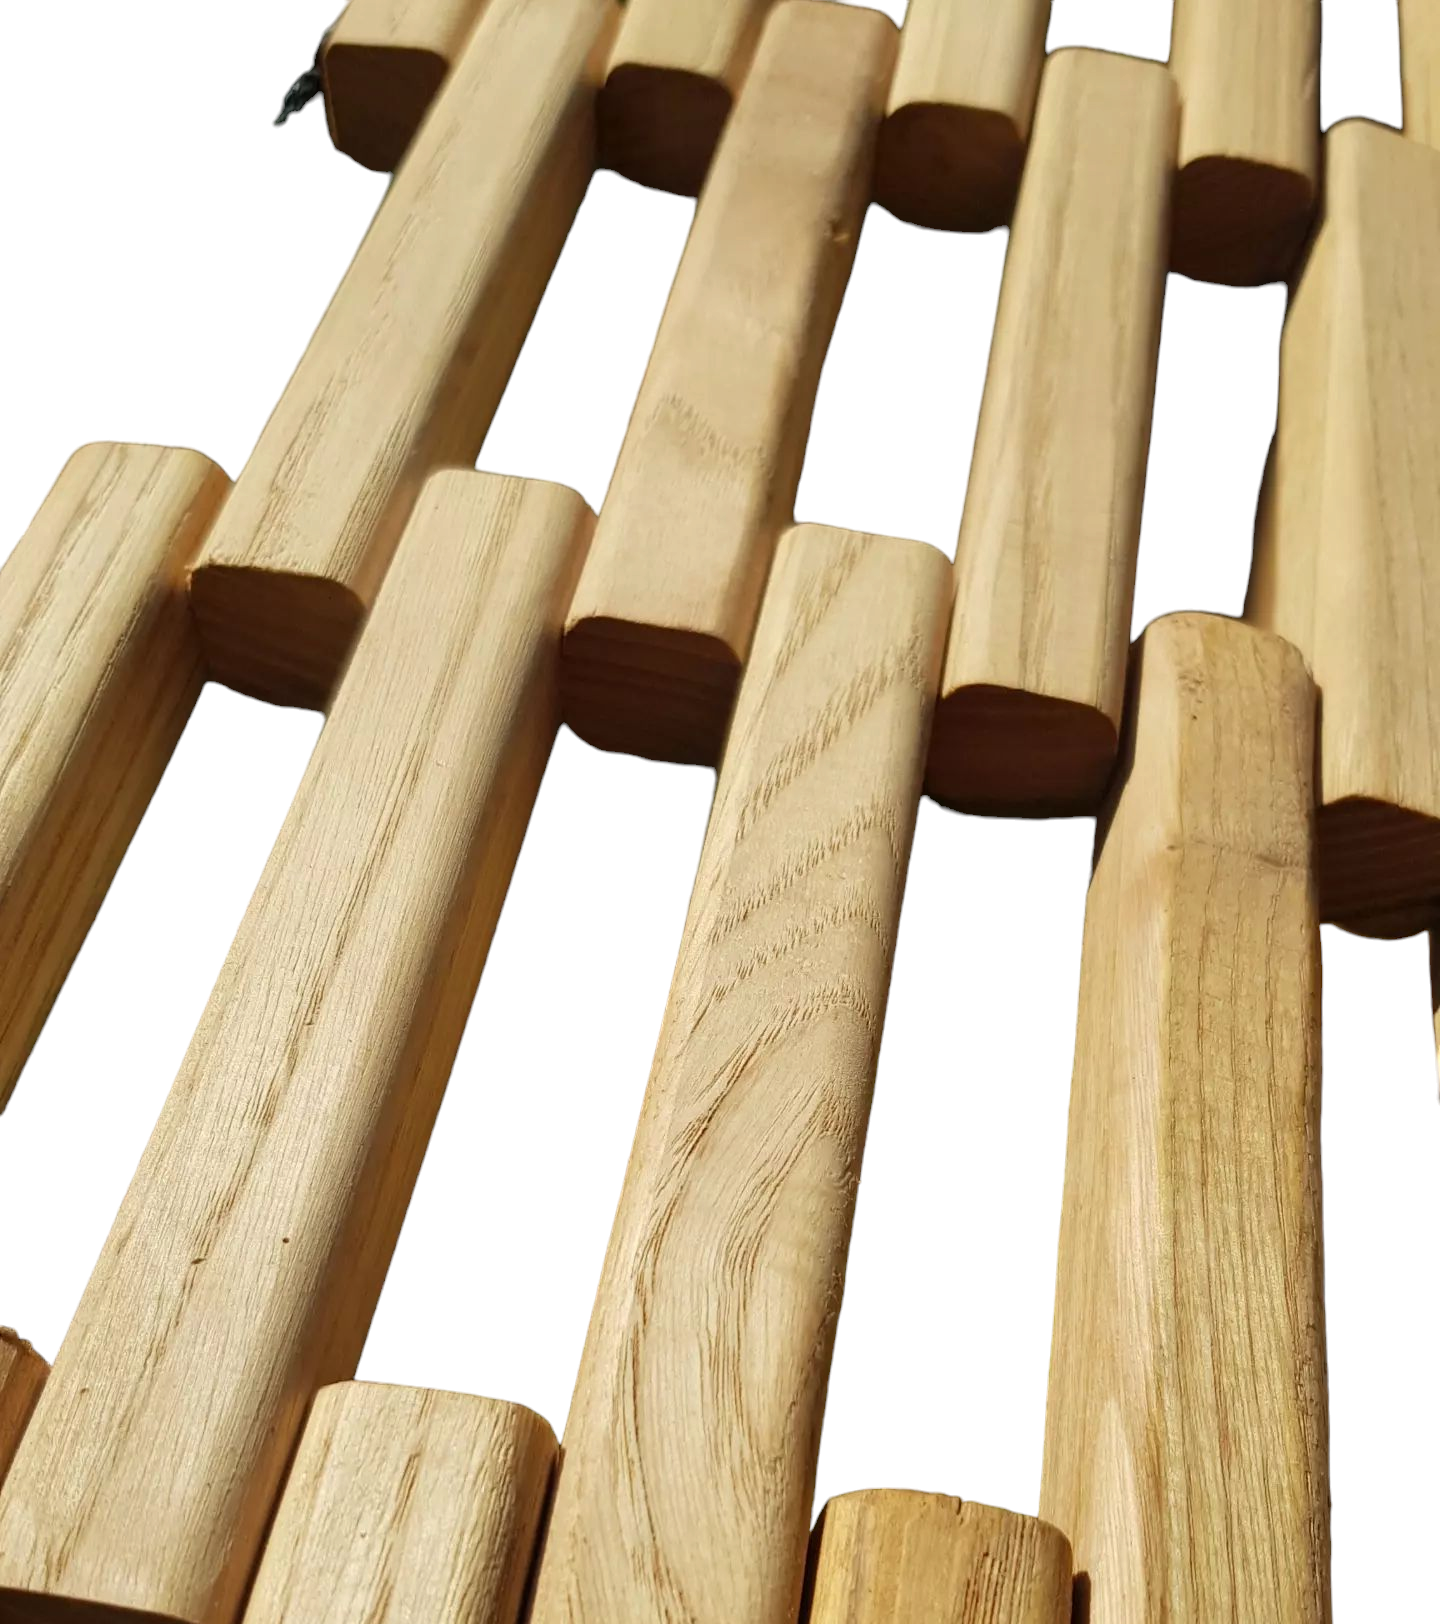 Wooden hammock V2